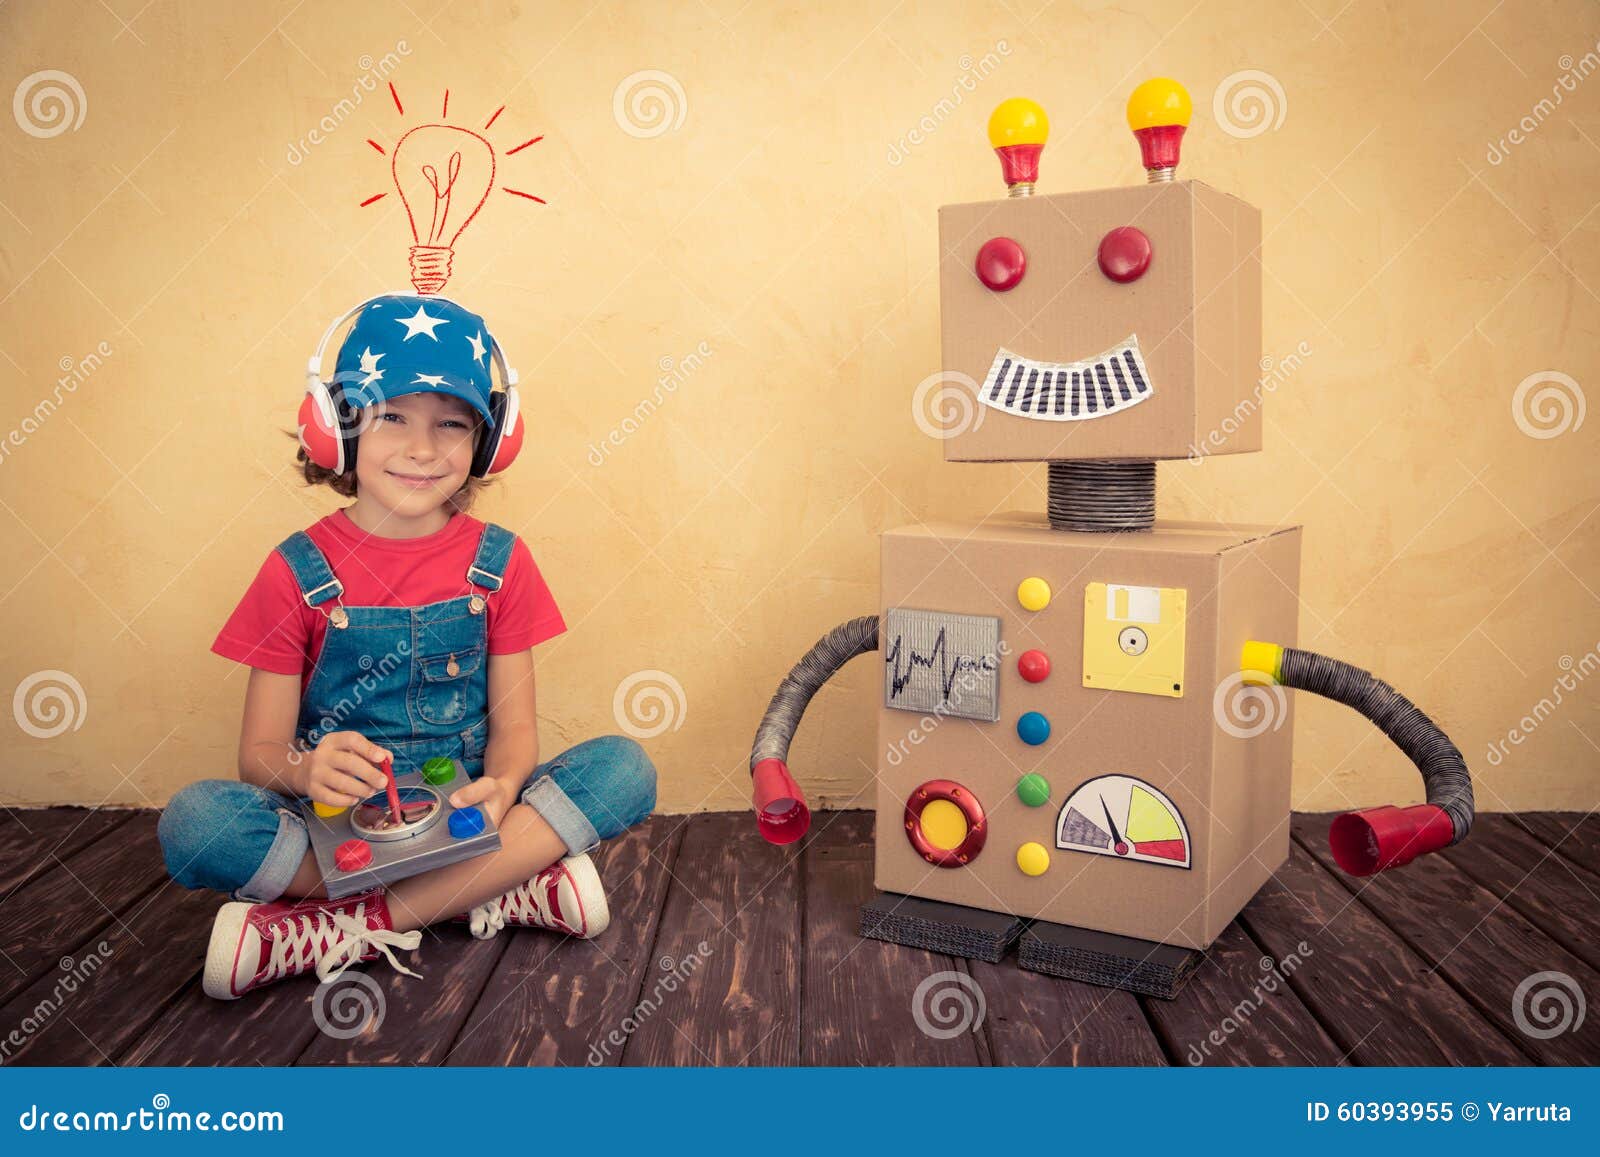 happy kid toy robot